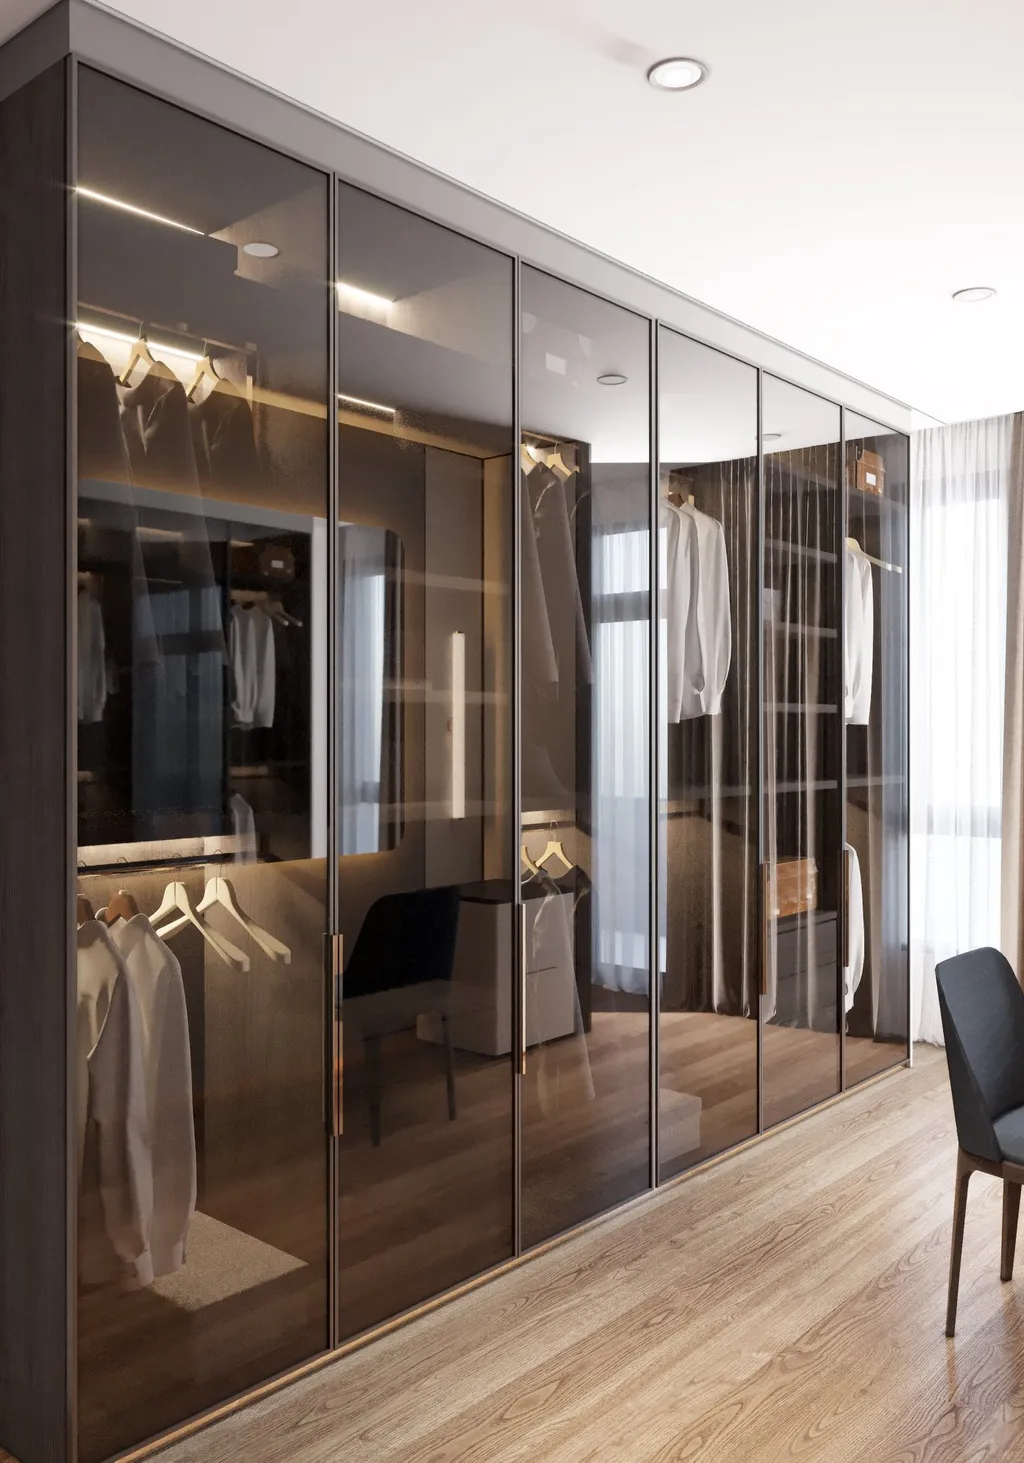 Công trình hoàn thiện nội thất phòng thay đồ cho căn hộ theo phong cách Neo Classic & Minimalism số 2. Thi công hoàn thiện bởi TD INTERIOR.